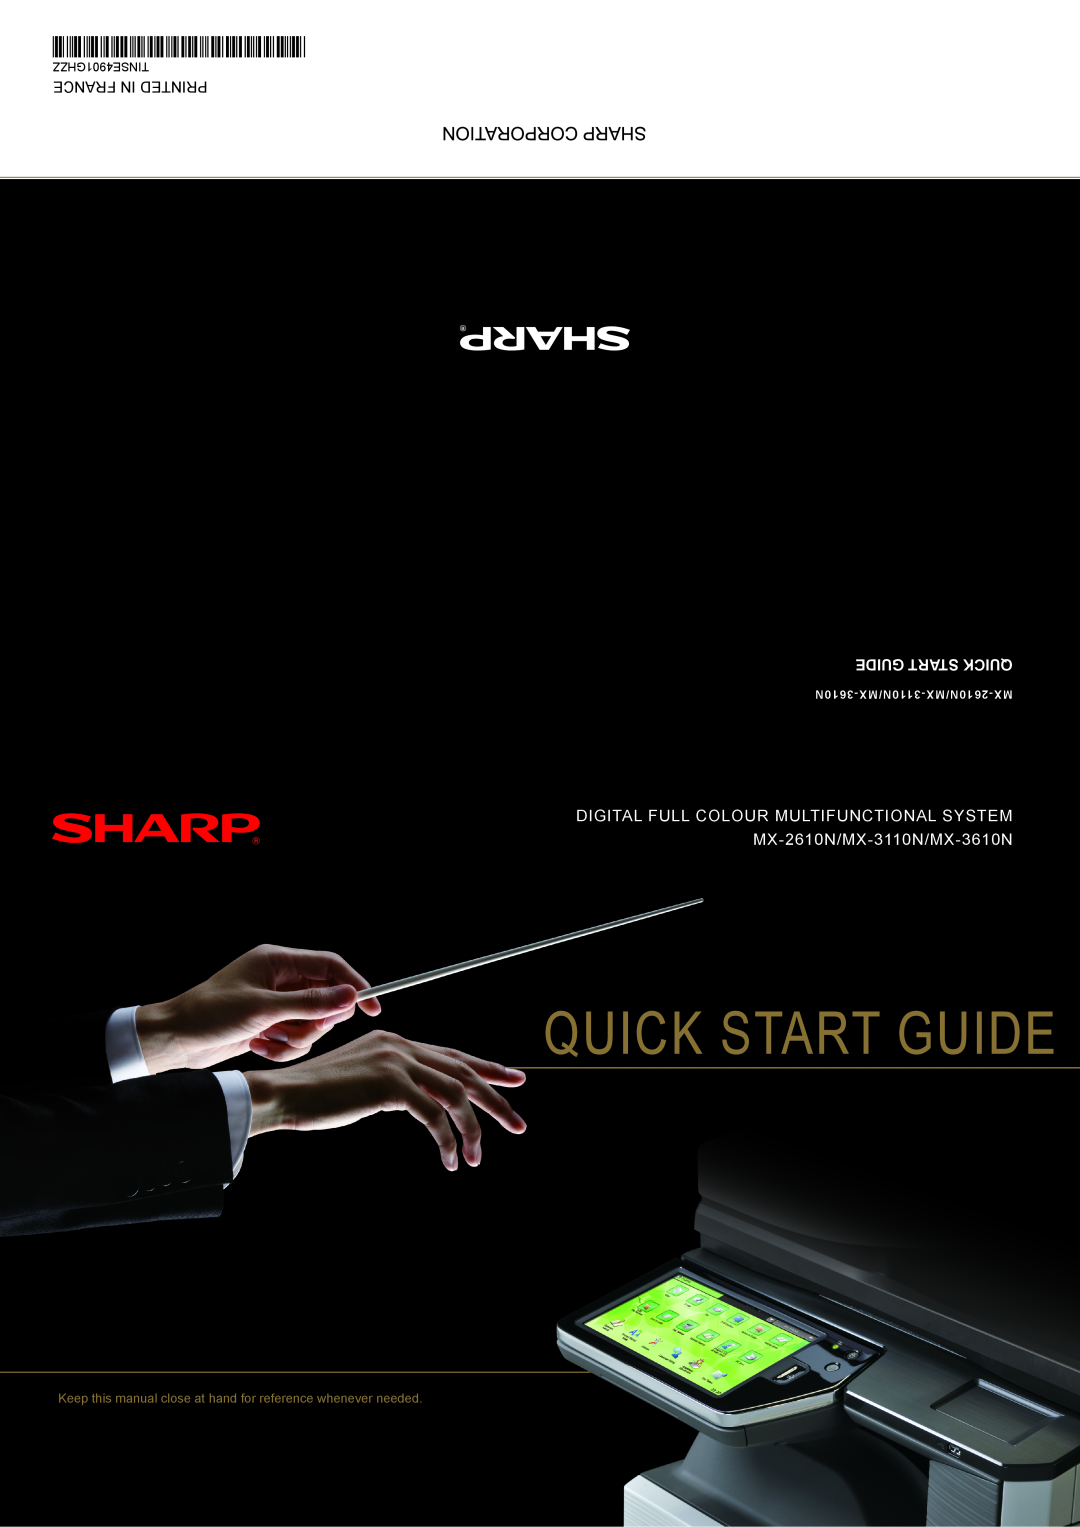 Sharp quick start Quick Start Guide, DIGITAL FULL COLOUR MULTIFUNCTIONAL SYSTEM MX-2610N/MX-3110N/MX-3610N 